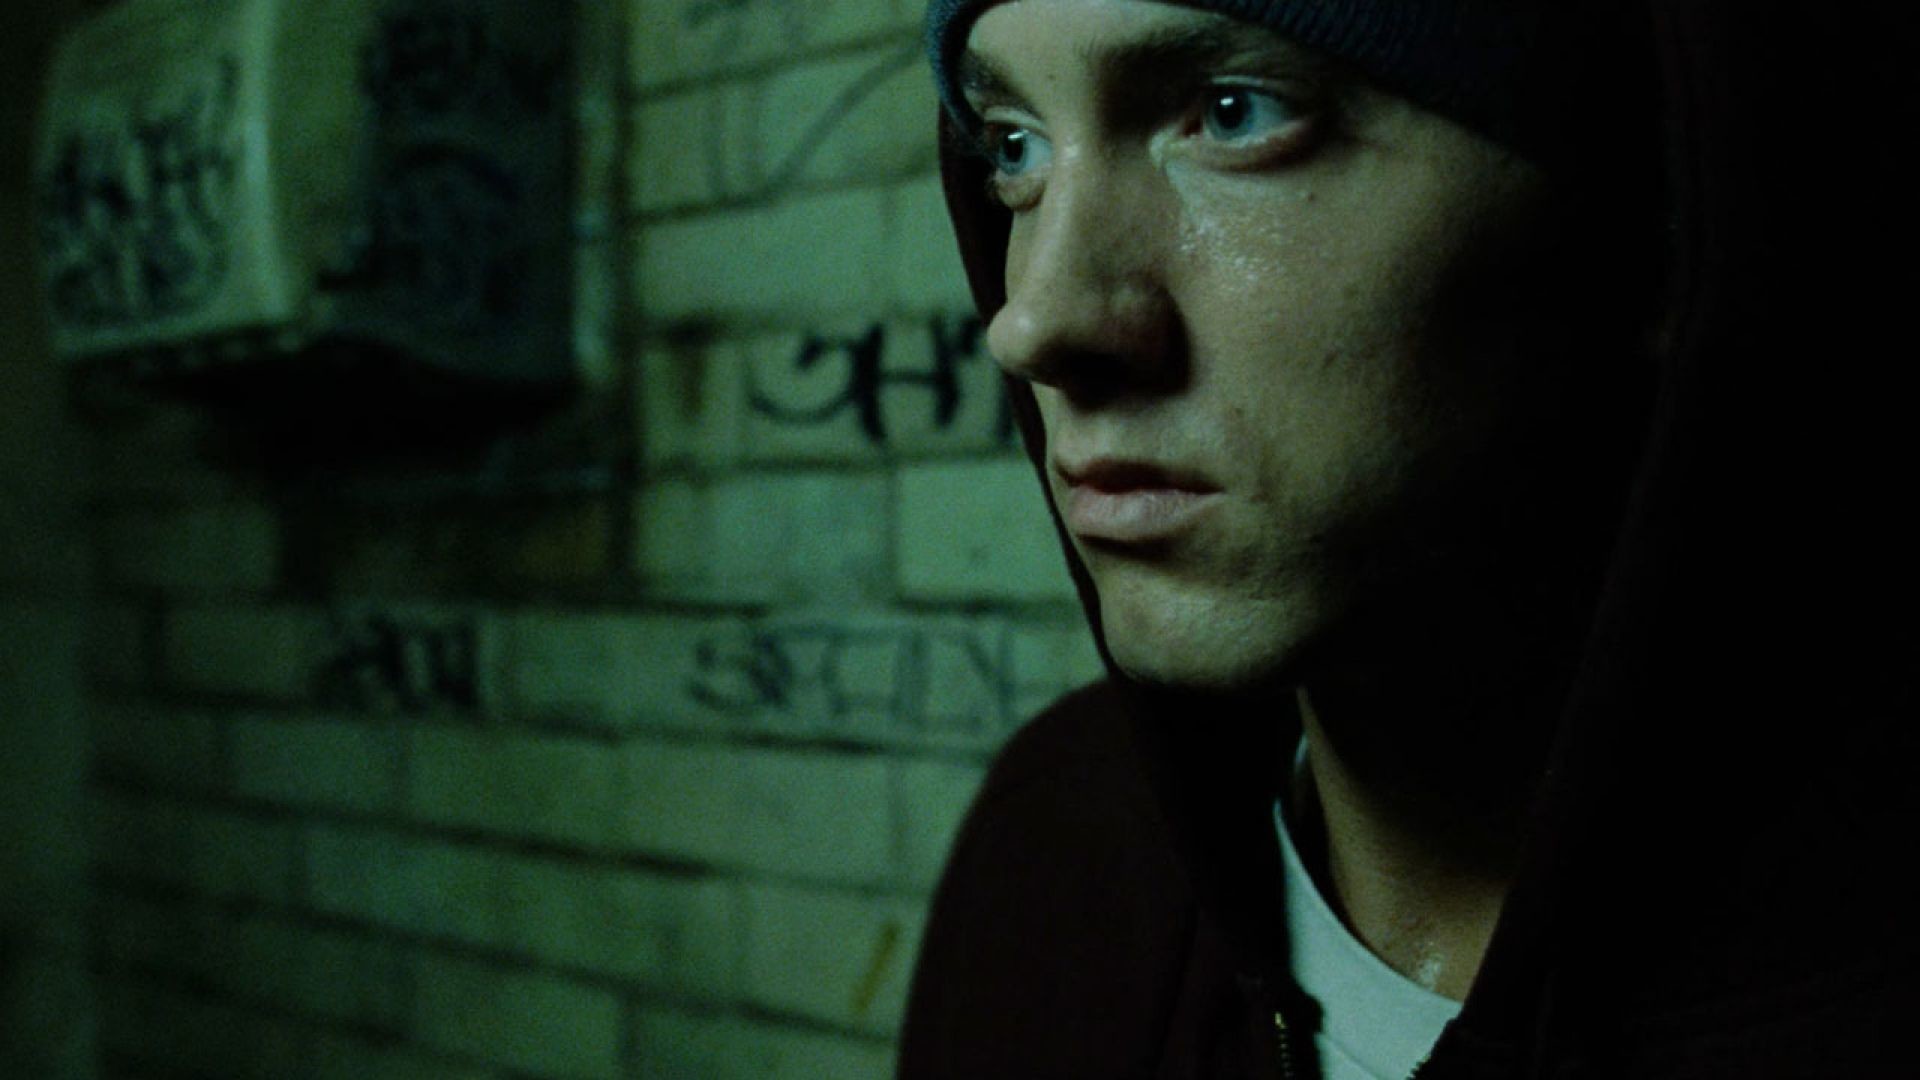 Movie - Eminem 8 Mile , HD Wallpaper & Backgrounds